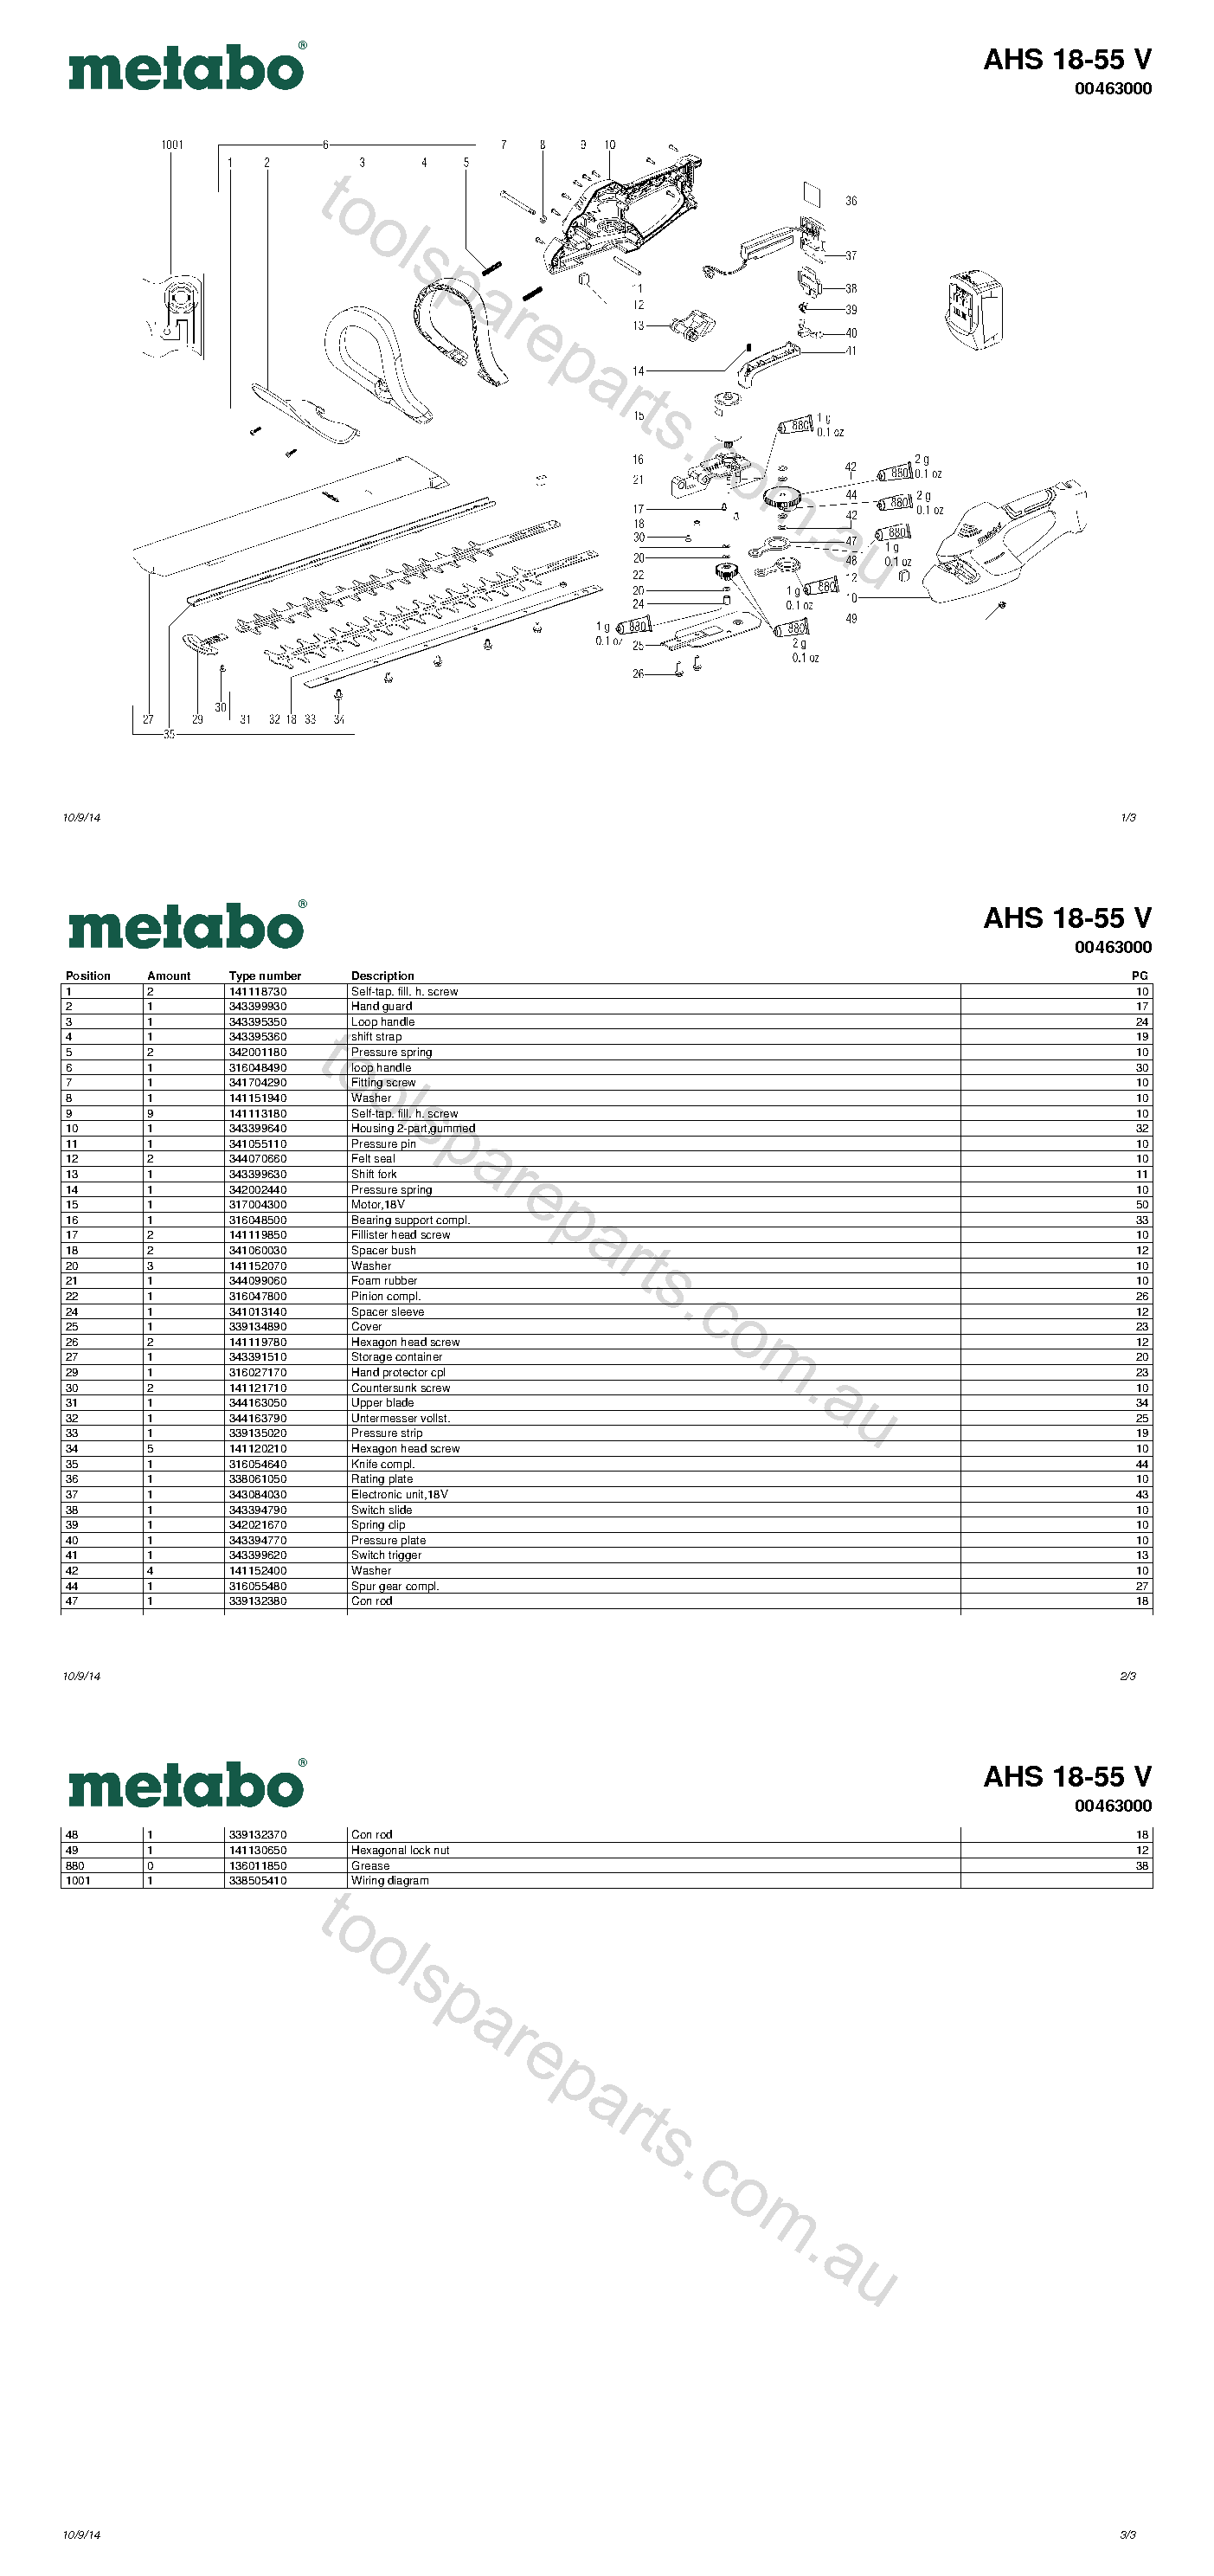 Metabo AHS 18-55 V 00463000  Diagram 1